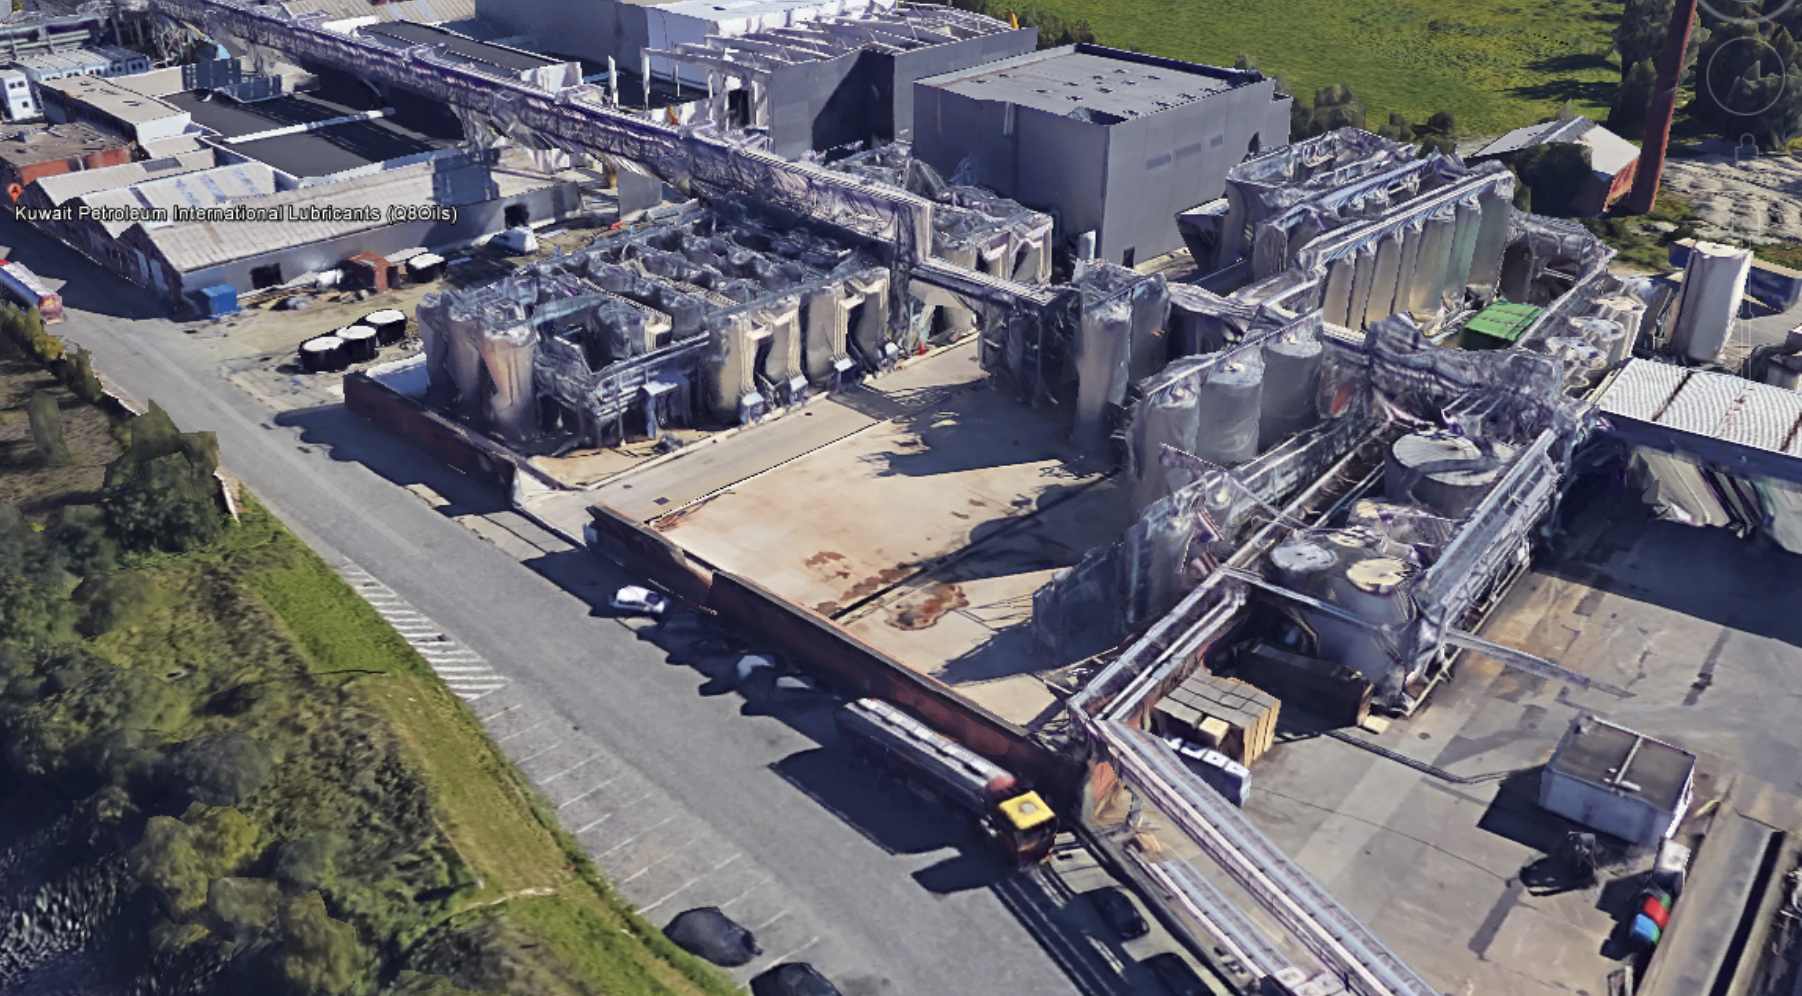 Real CORP in Sint-Gillis-Waas - duurzame petrochemische en staalbouw